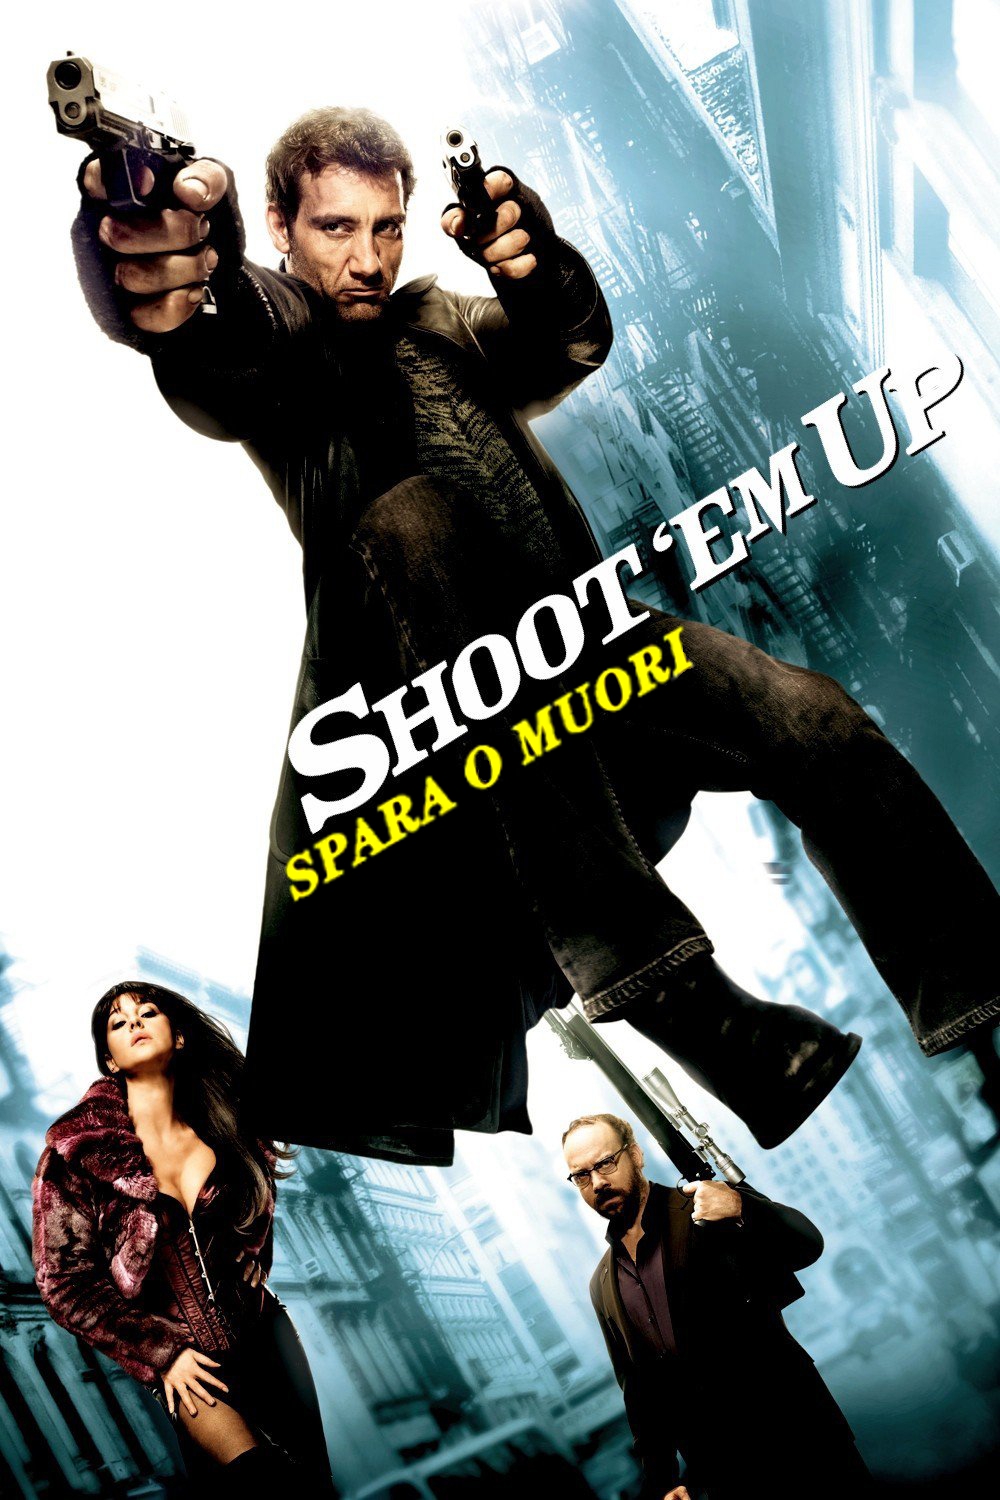 Shoot’Em Up – Spara o muori! [HD] (2007)